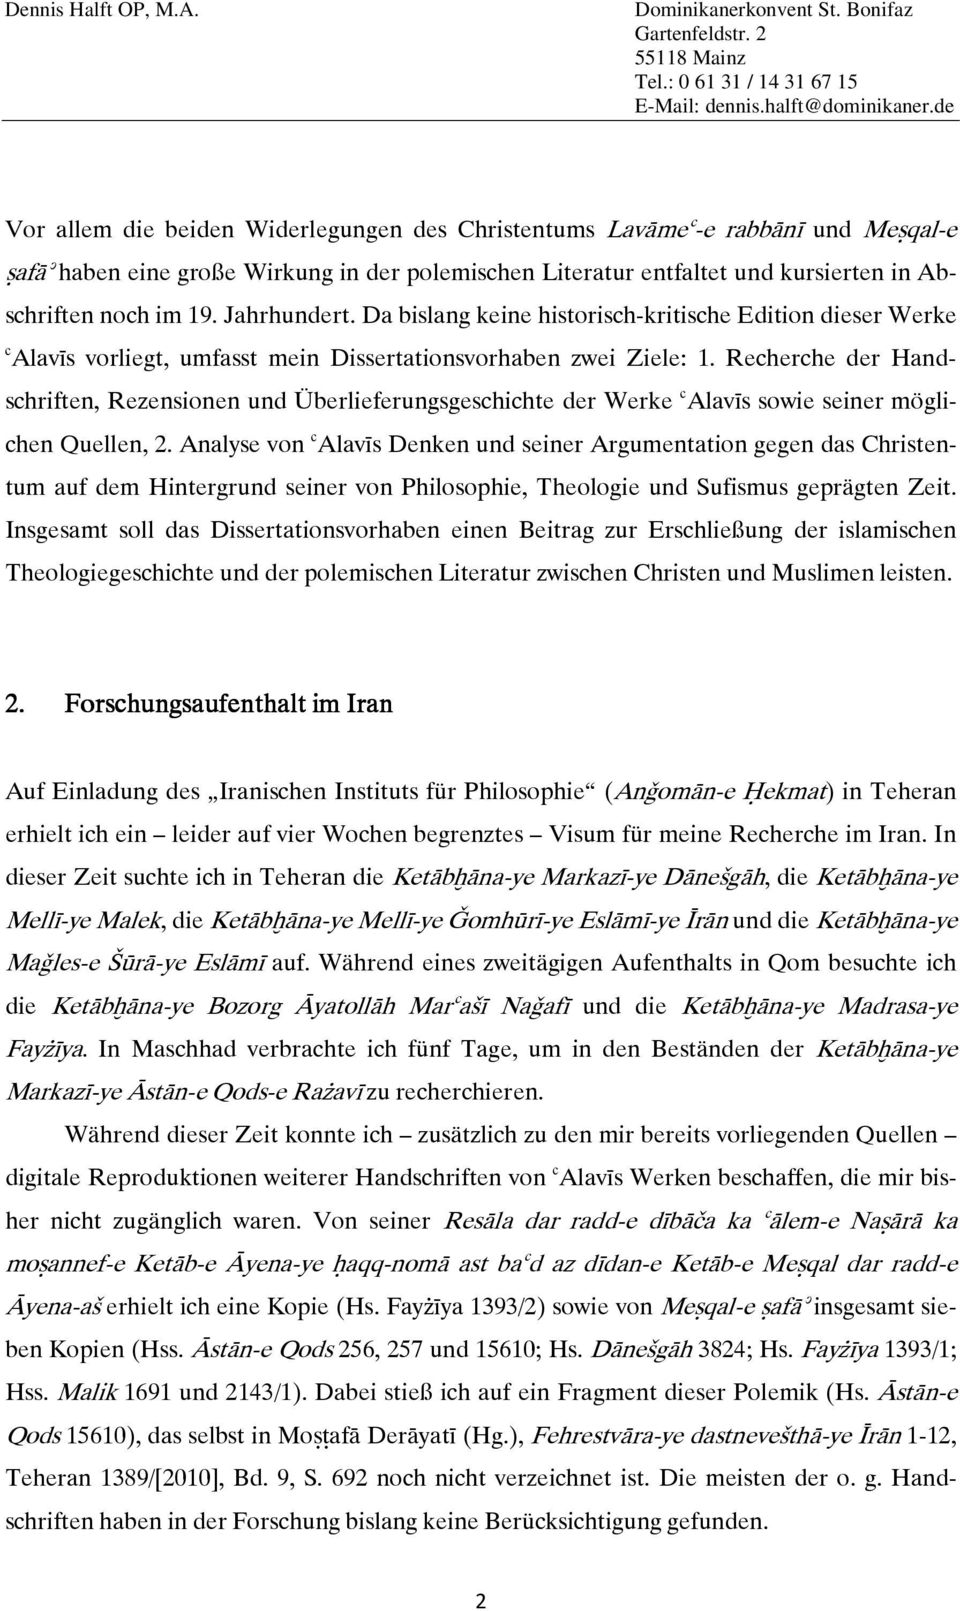 Recherche der Hand- schriften,rezensionenundüberlieferungsgeschichtederwerkeʿalavīssowieseinermögli- chenquellen,2.